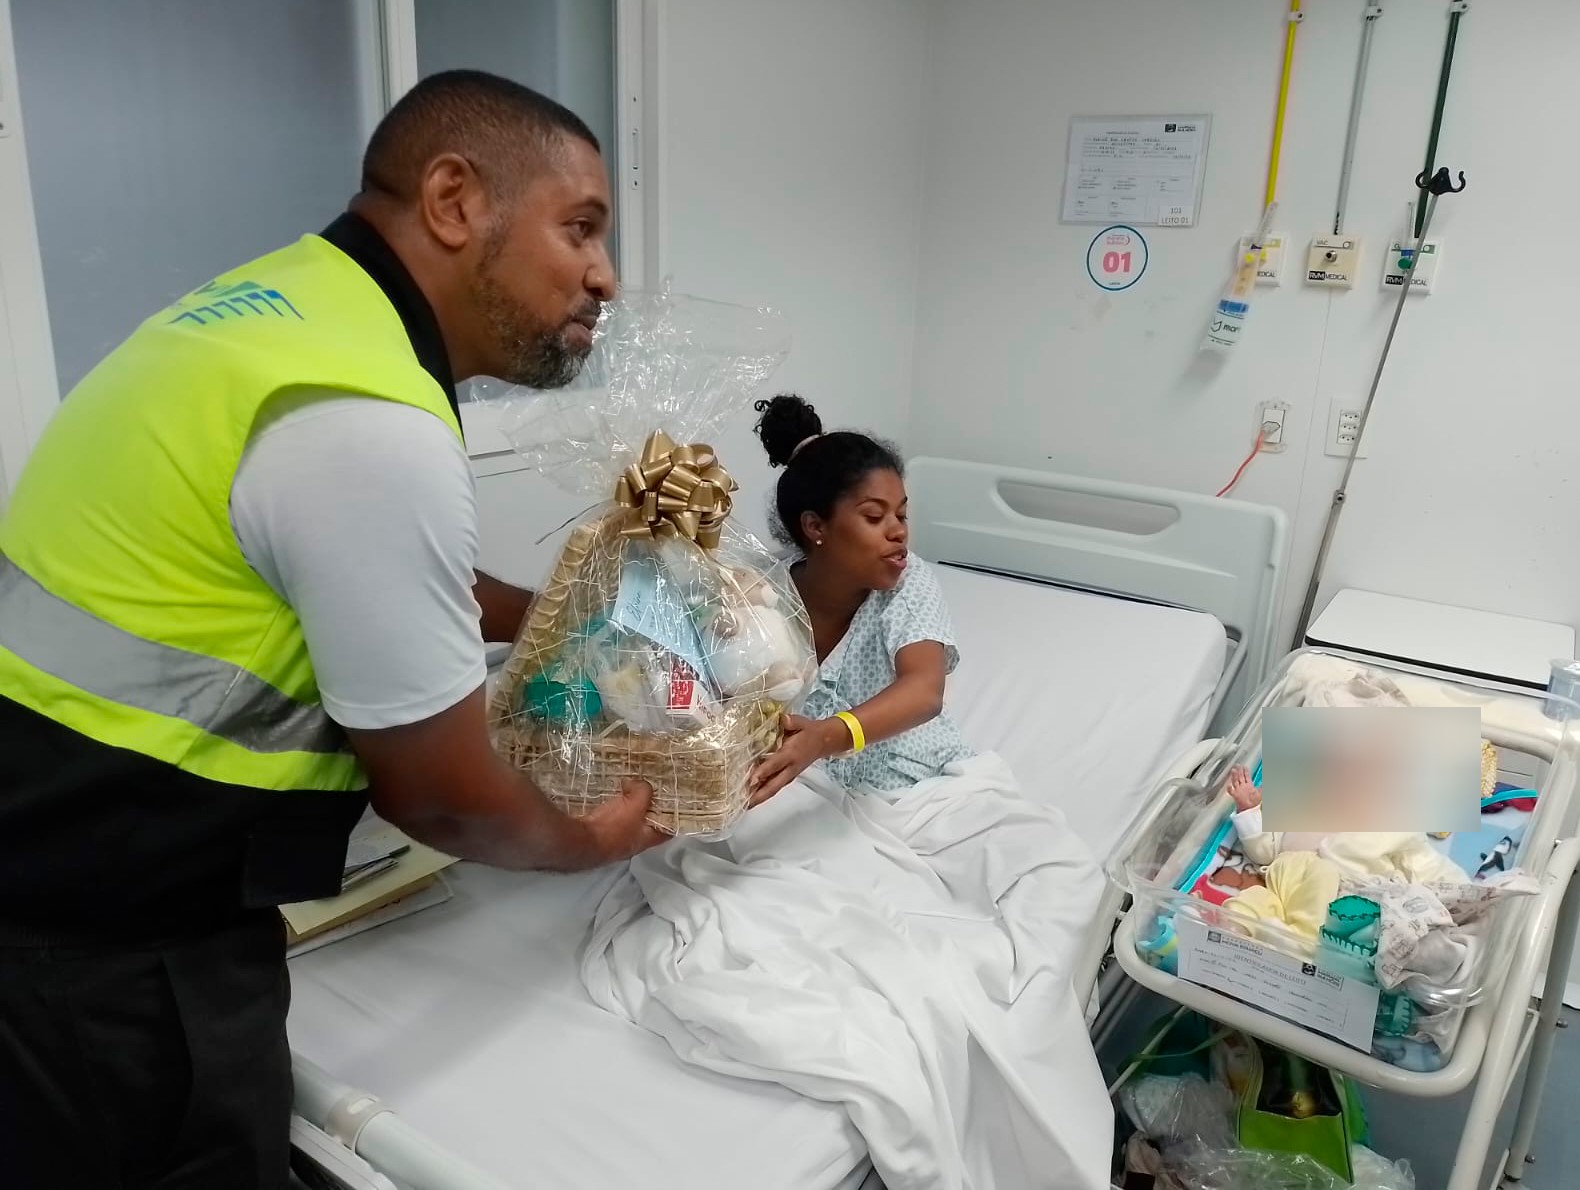 Bebê que nasceu em trem recebe presente da SuperVia (Foto: Divulgação)